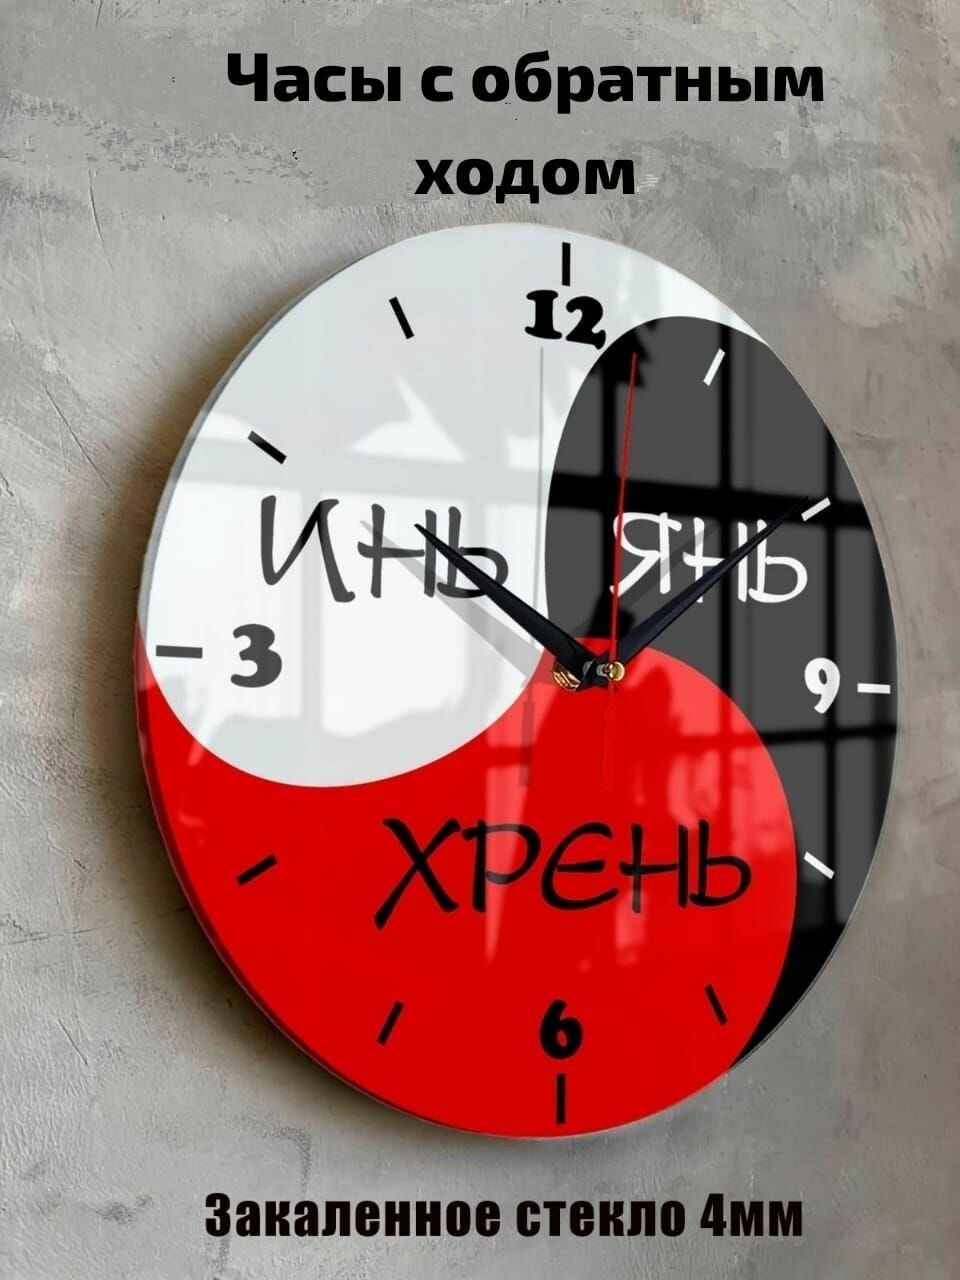 Часы настенные бесшумные большие на кухню на стену ИньЯн с обратным ходом "Часовой завод идеал" часы кухонные настенные интерьерные настенные часы